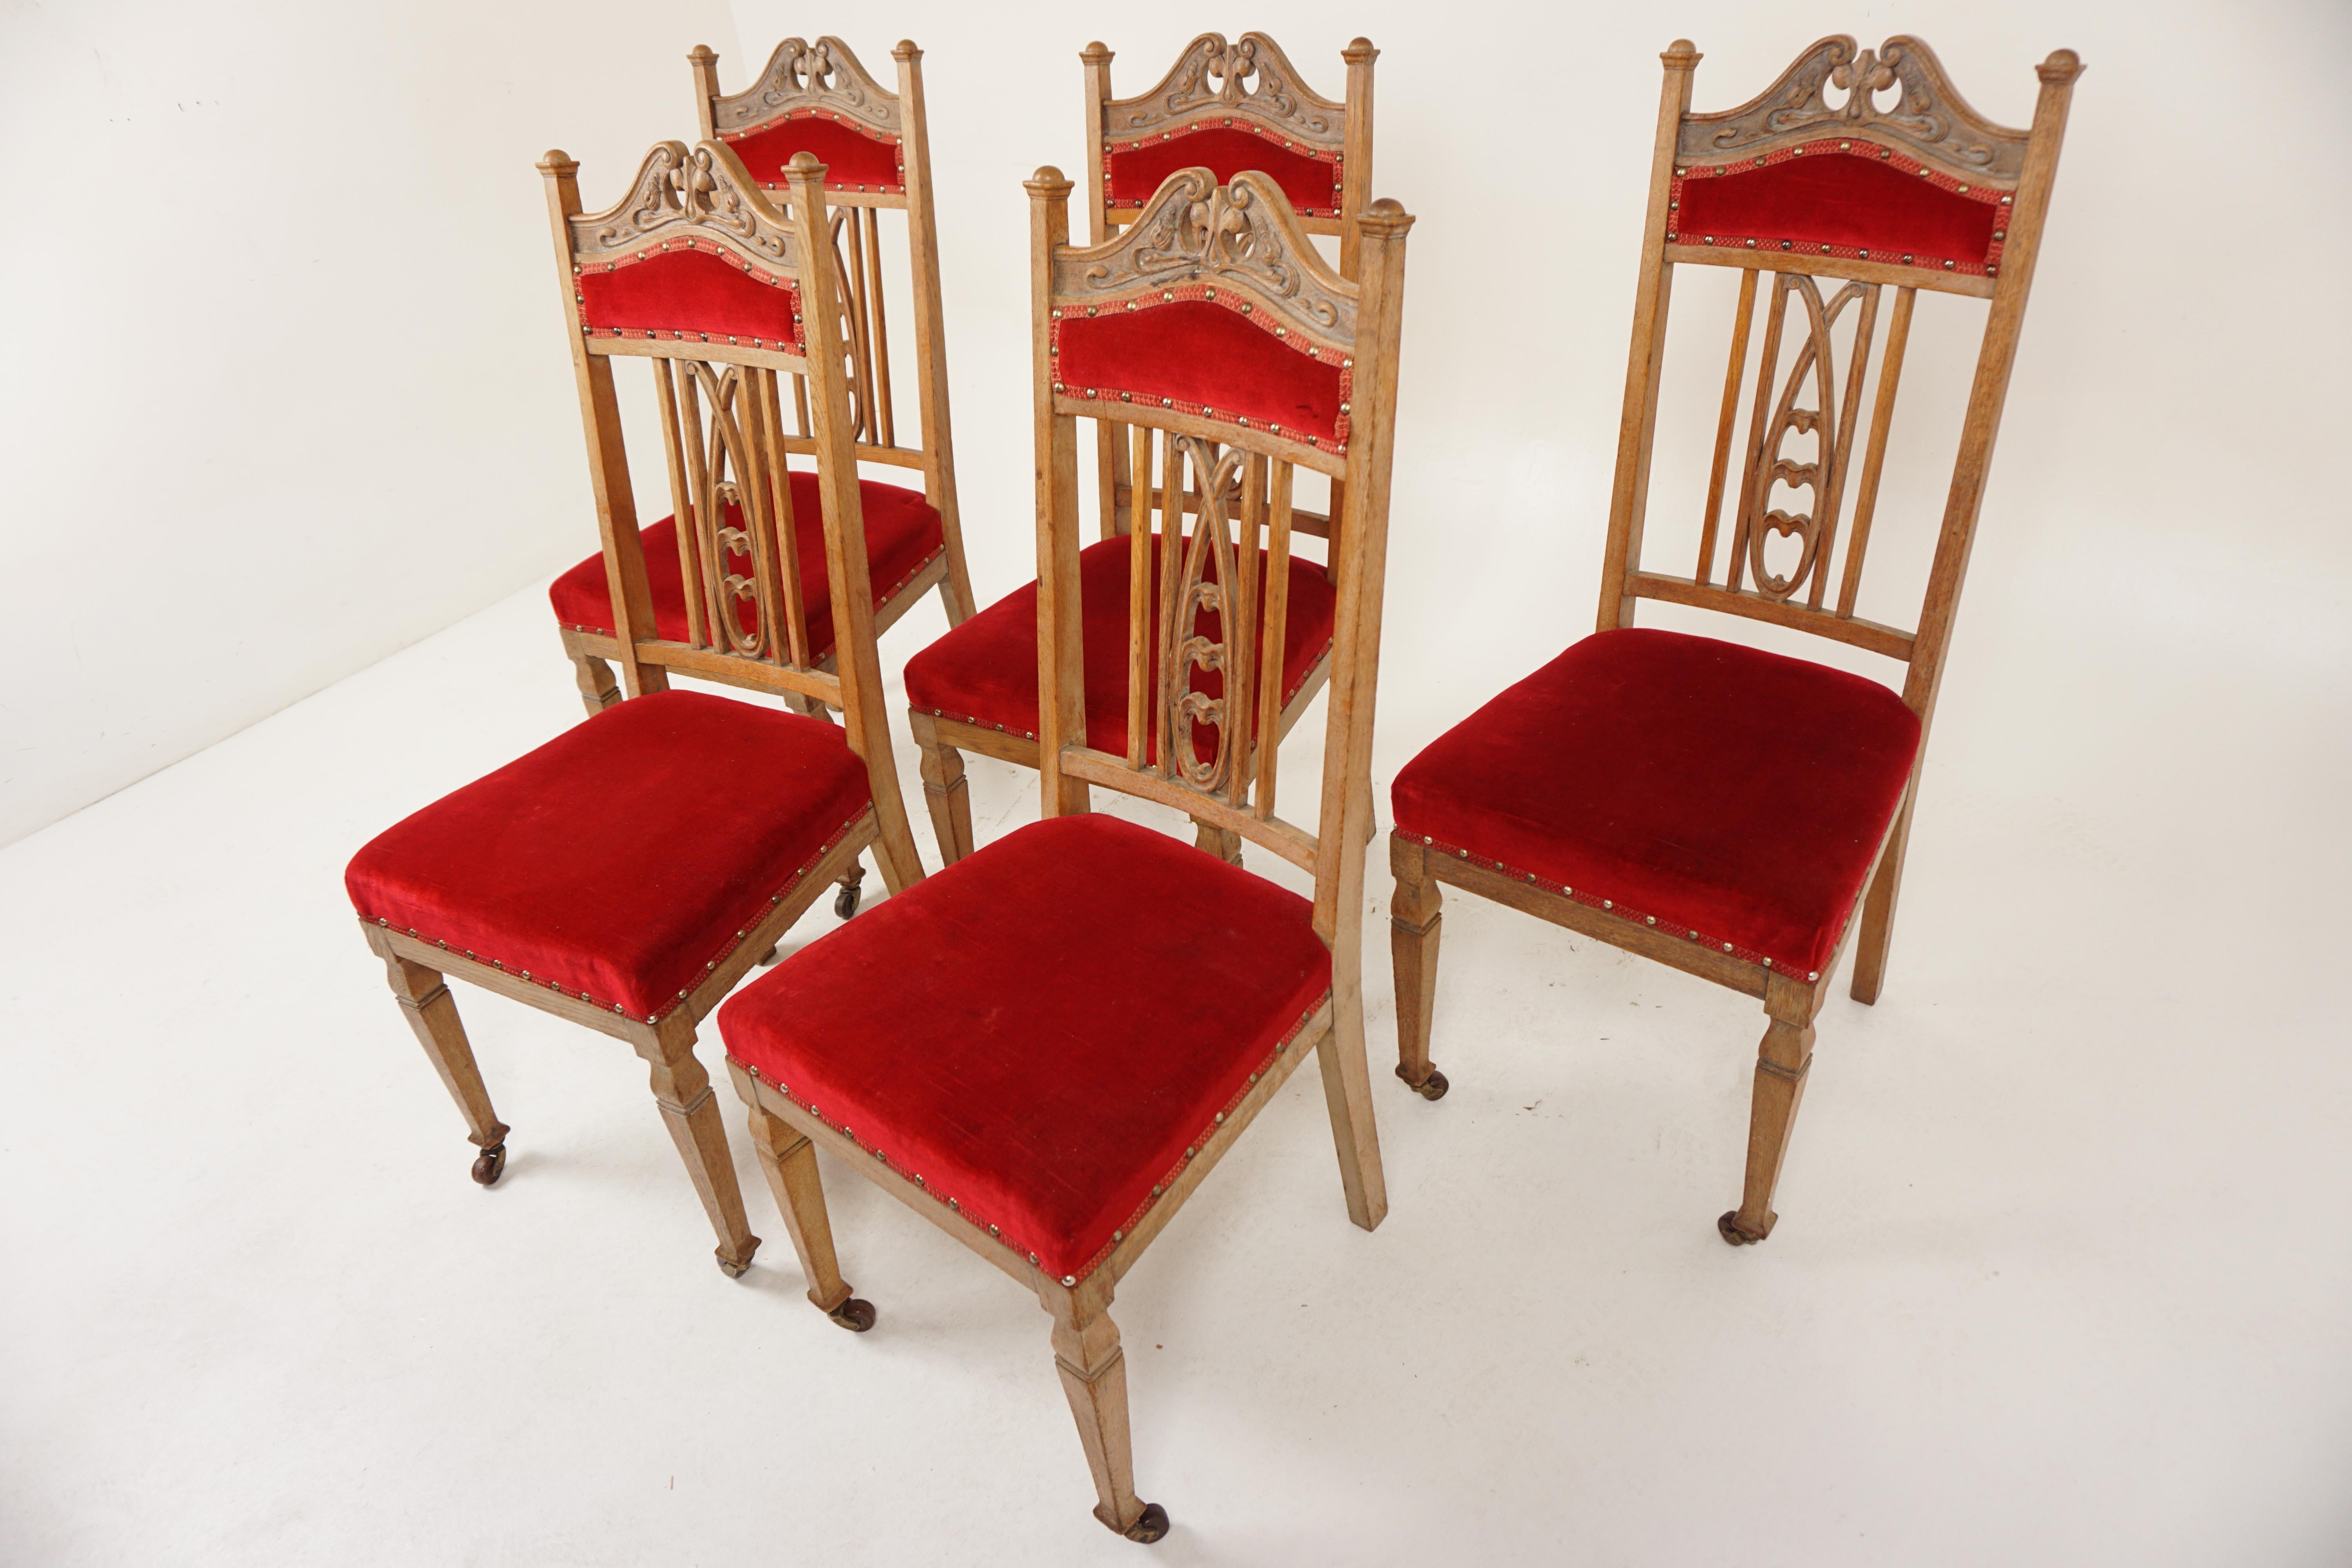 Ensemble de 5 chaises de salle à manger en chêne Art Nouveau, Arts & Crafts, Écosse 1900, H1013

Chêne massif
Finition originale
Le dosseret supérieur est sculpté selon les principes de l'art nouveau
Flanqué d'une paire de supports verticaux